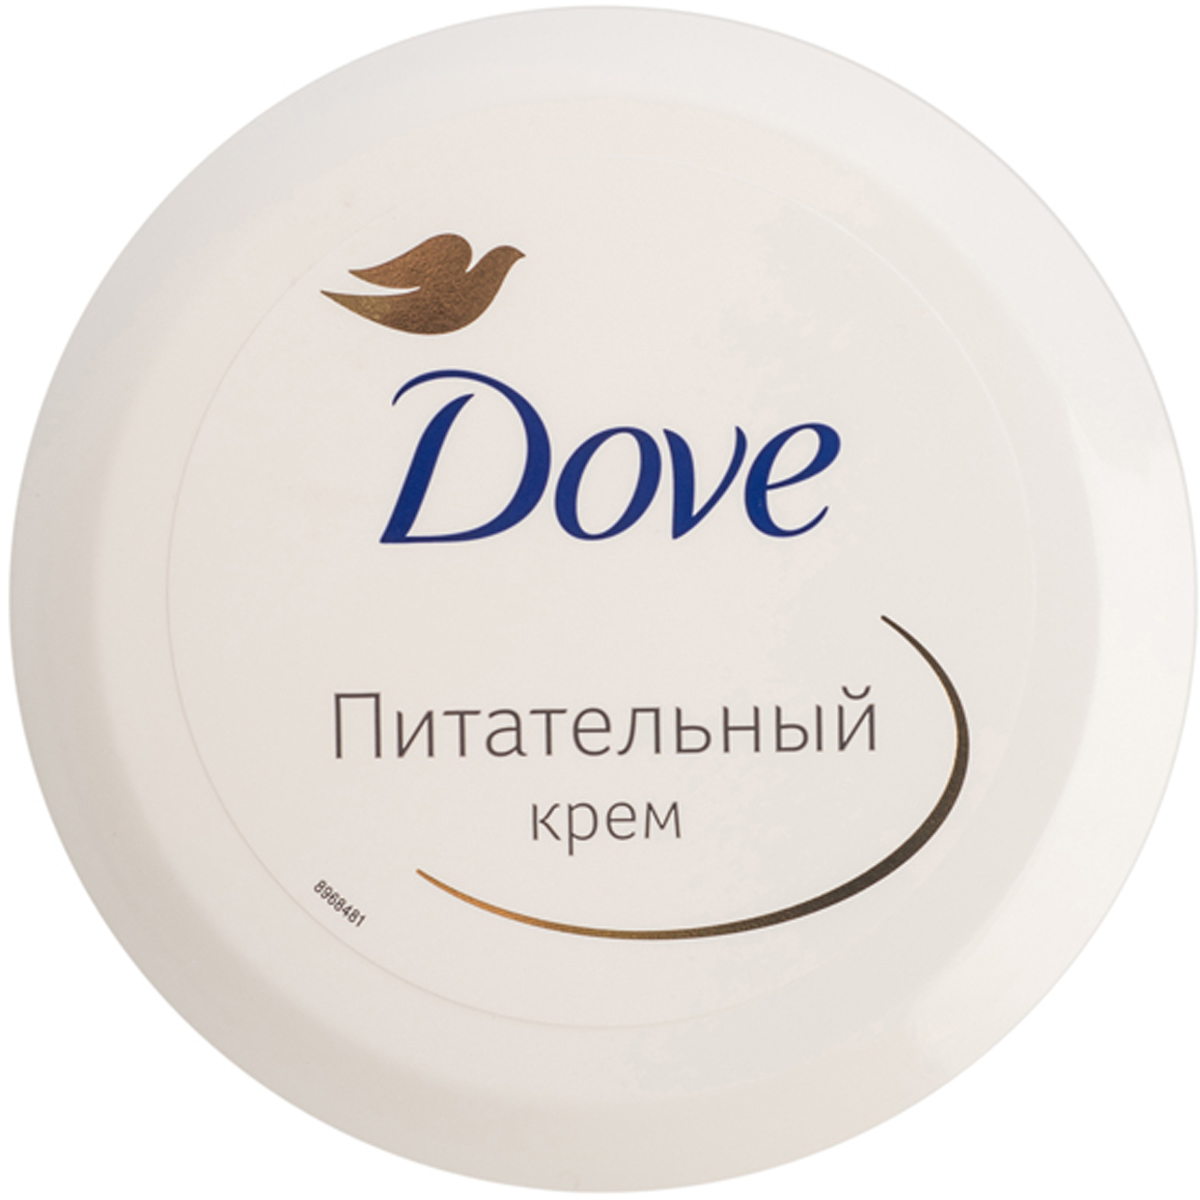 заказать и купить Dove Крем для тела Питательный 75 мл